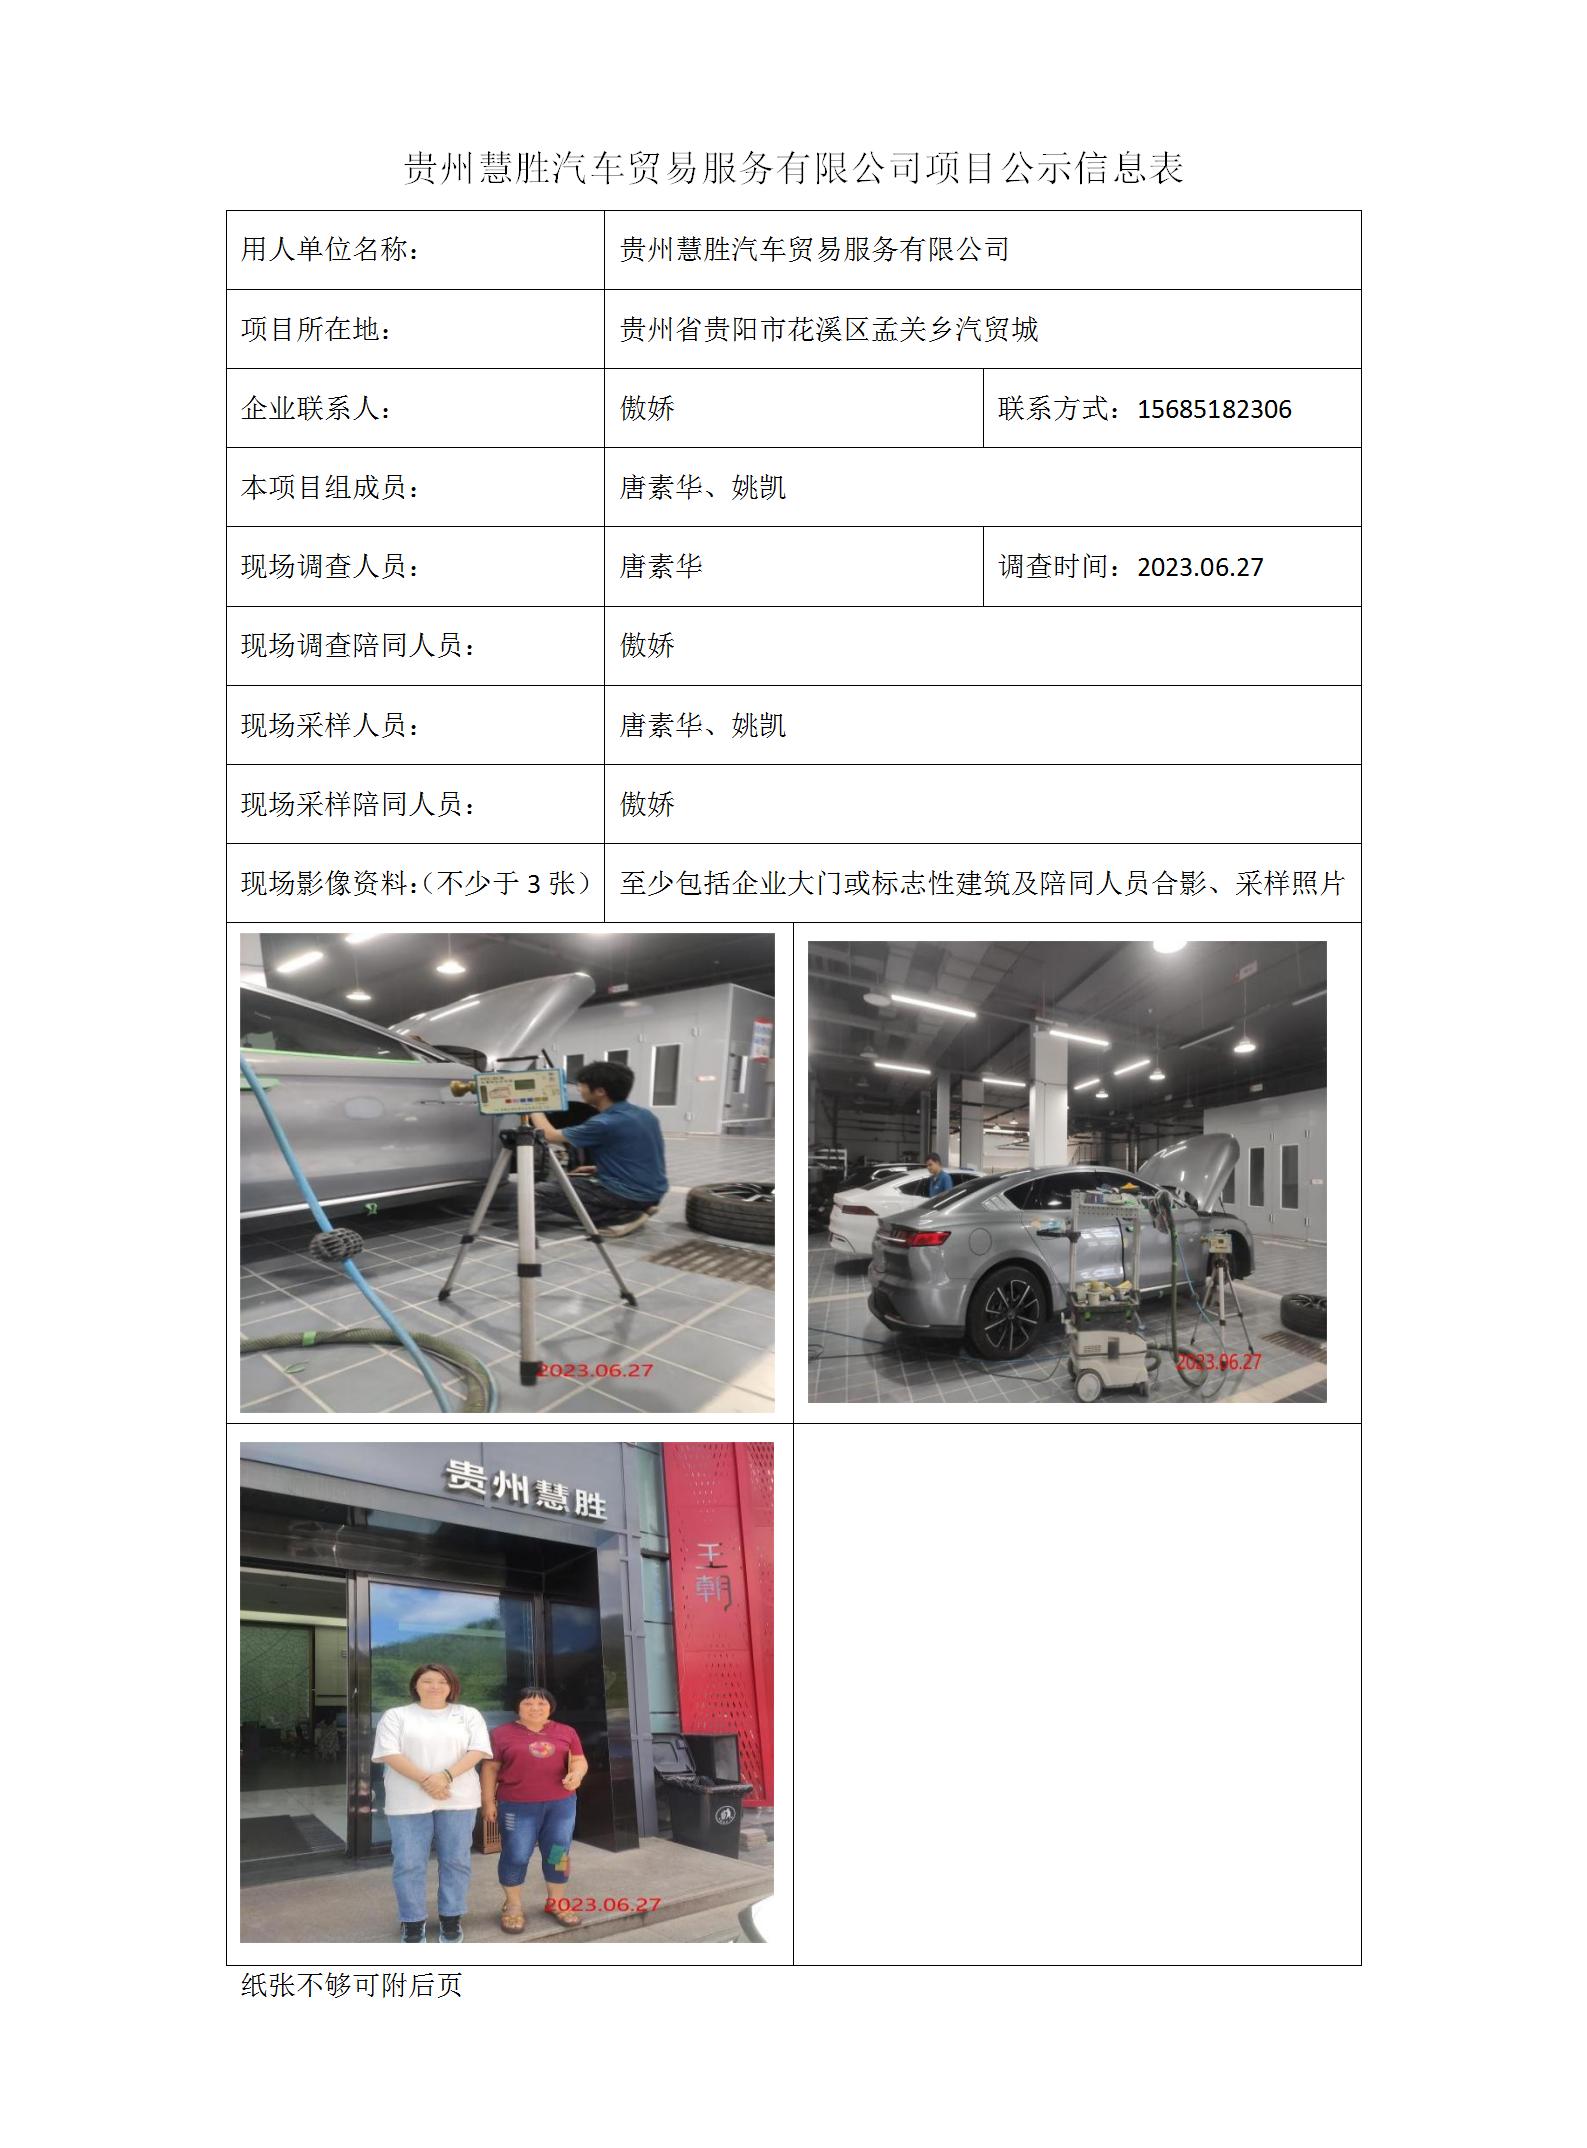 贵州慧胜汽车贸易服务有限公司项目公示信息表_01.jpg